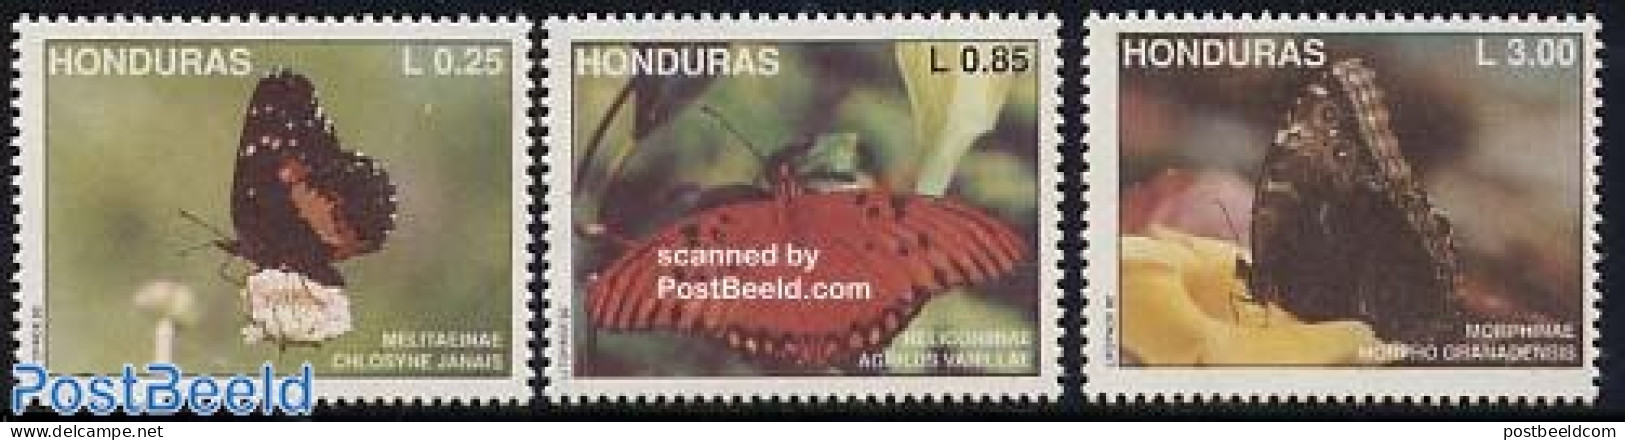 Honduras 1992 Butterflies 3v, Mint NH, Nature - Butterflies - Honduras